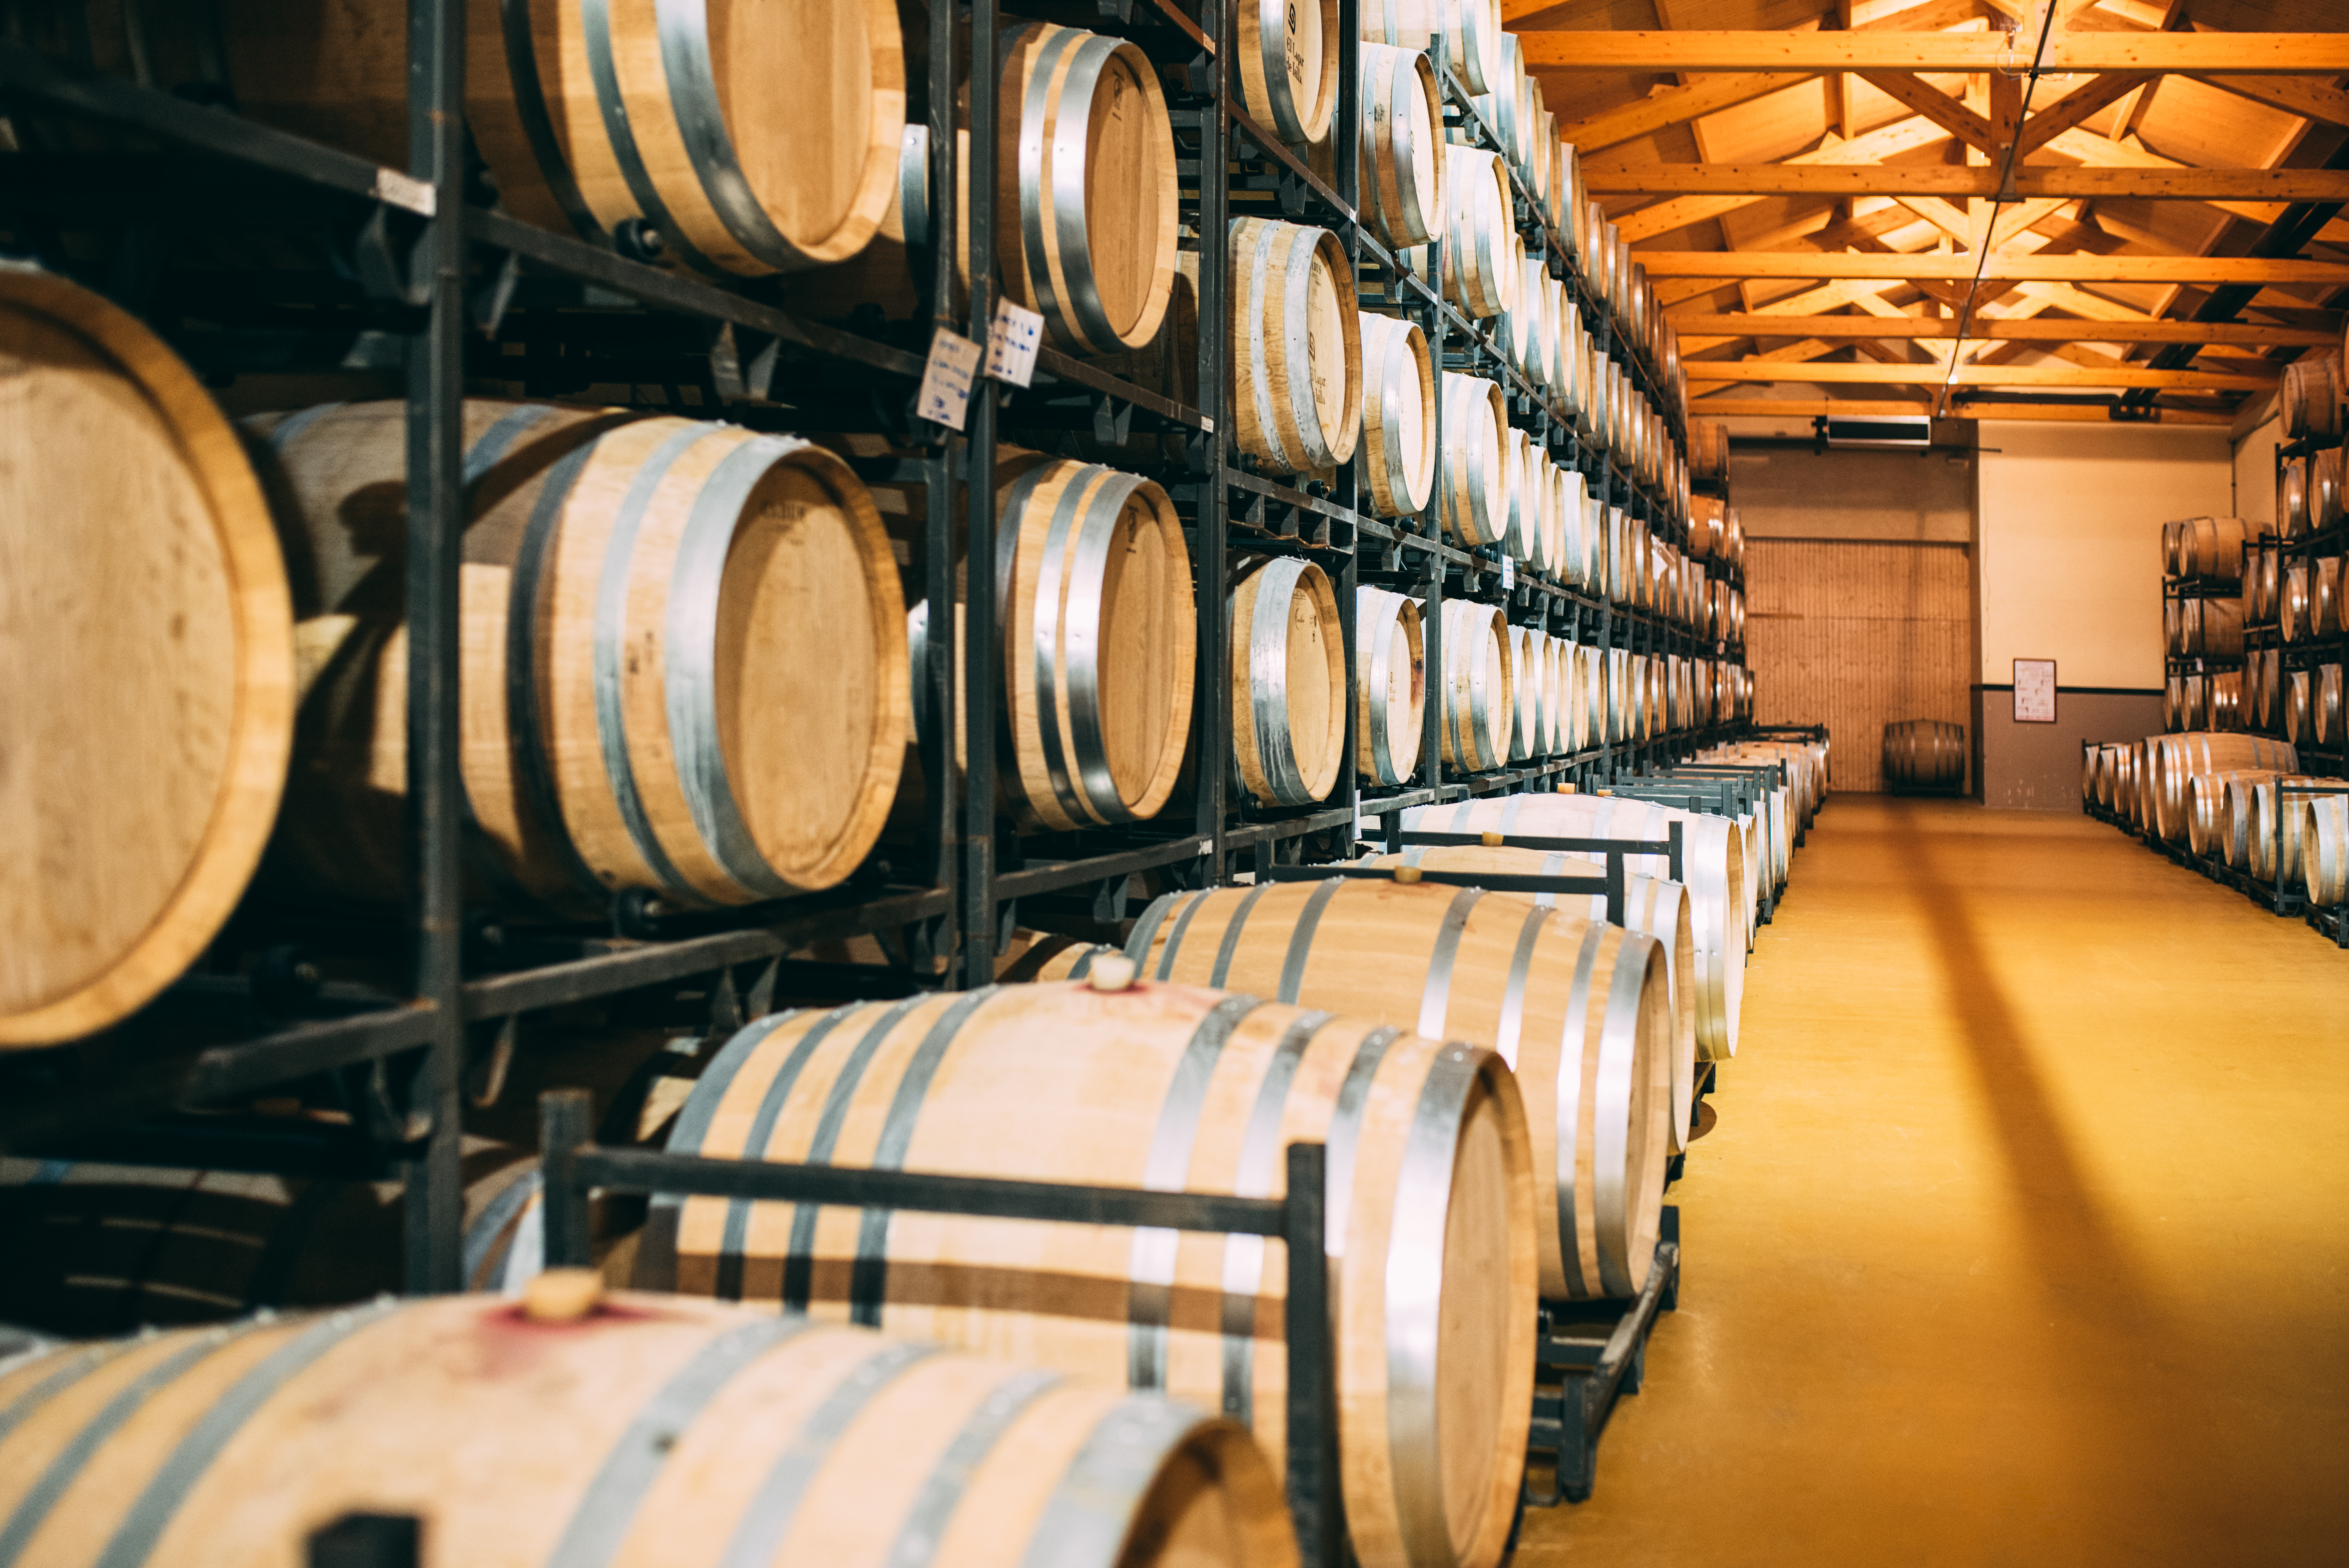 wood-wine-barrels-stored-in-a-winery-on-the-fermen-2023-11-27-04-50-31-utc.jpg